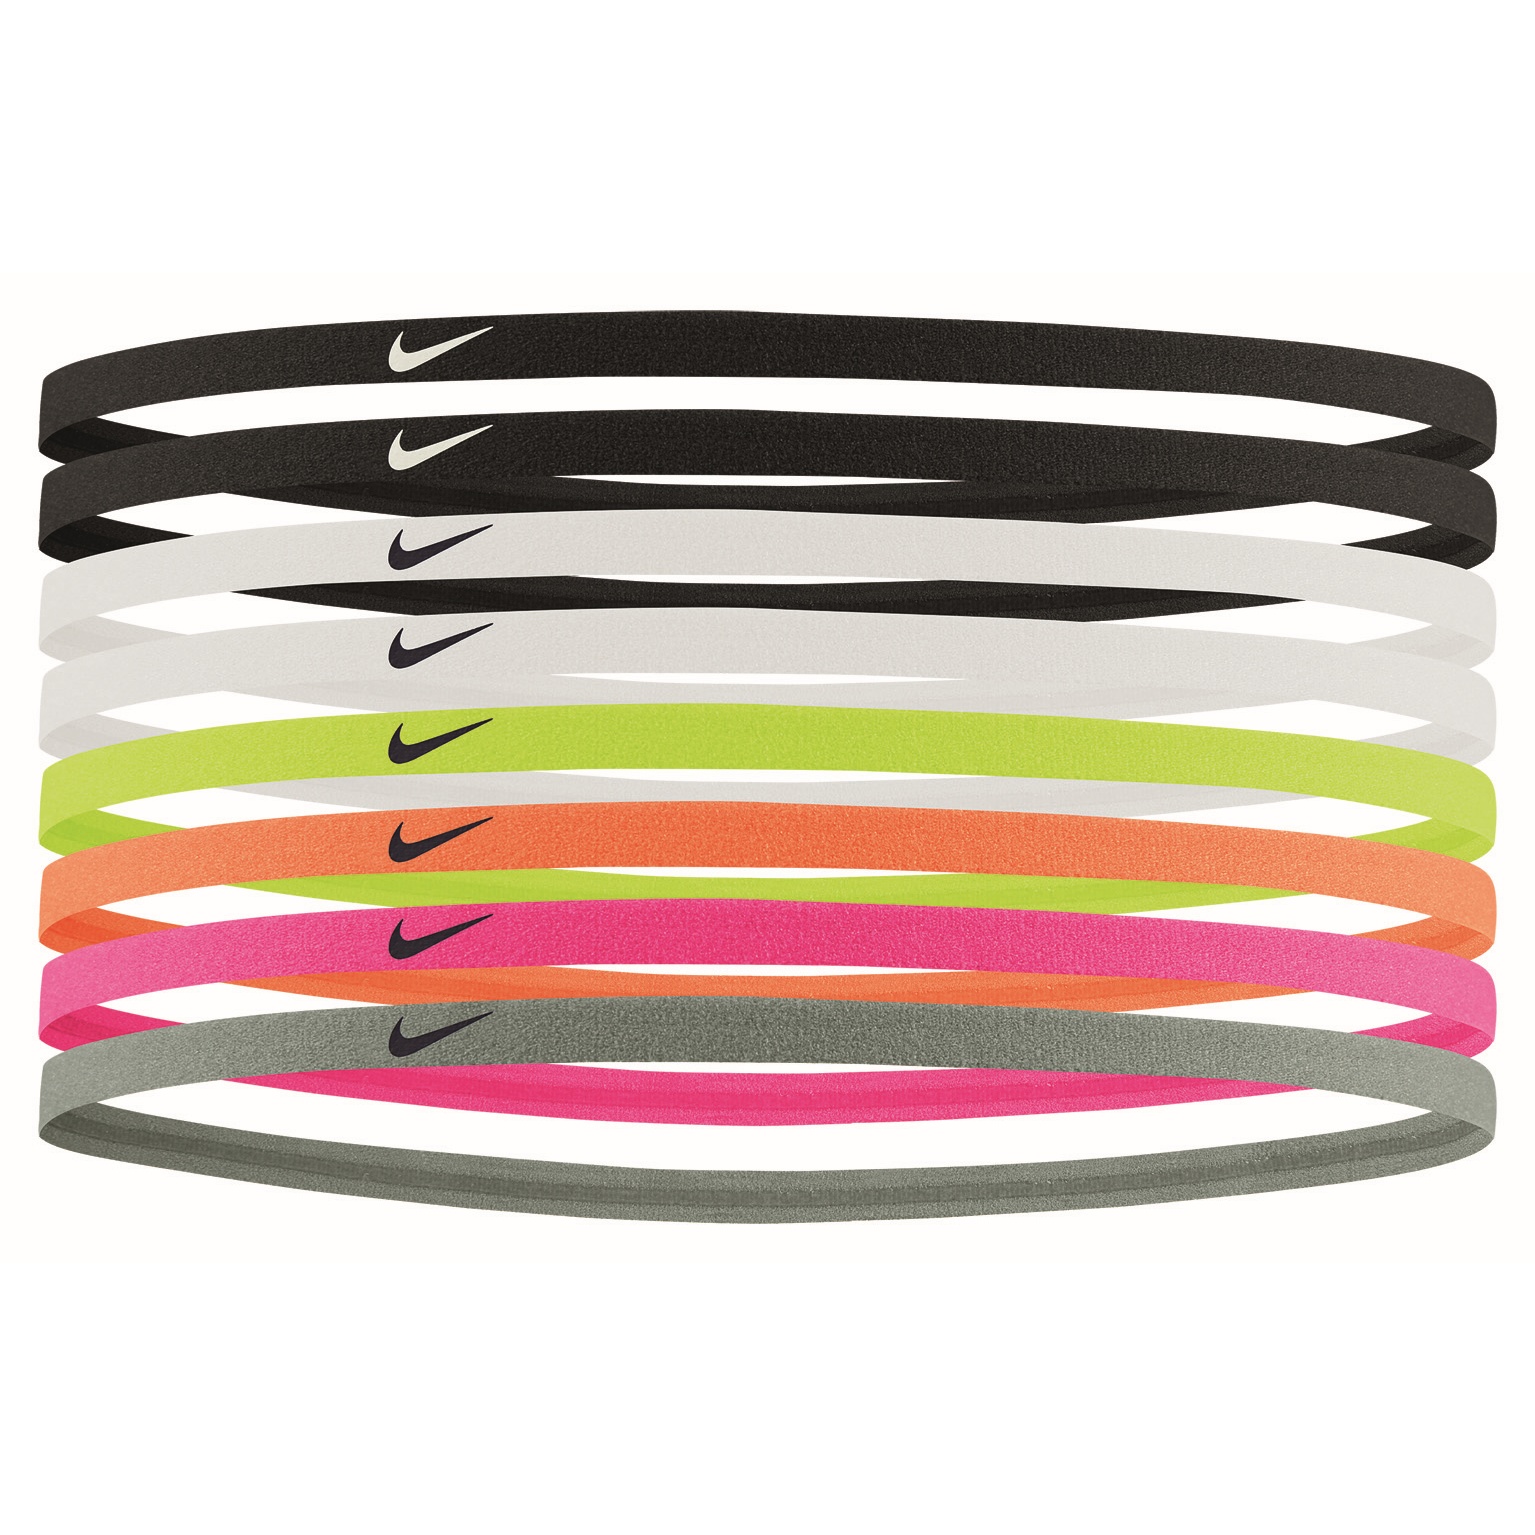 Produktbild von Nike Skinny Stirnbänder (8er-Pack) - schwarz/schwarz/weiß 909